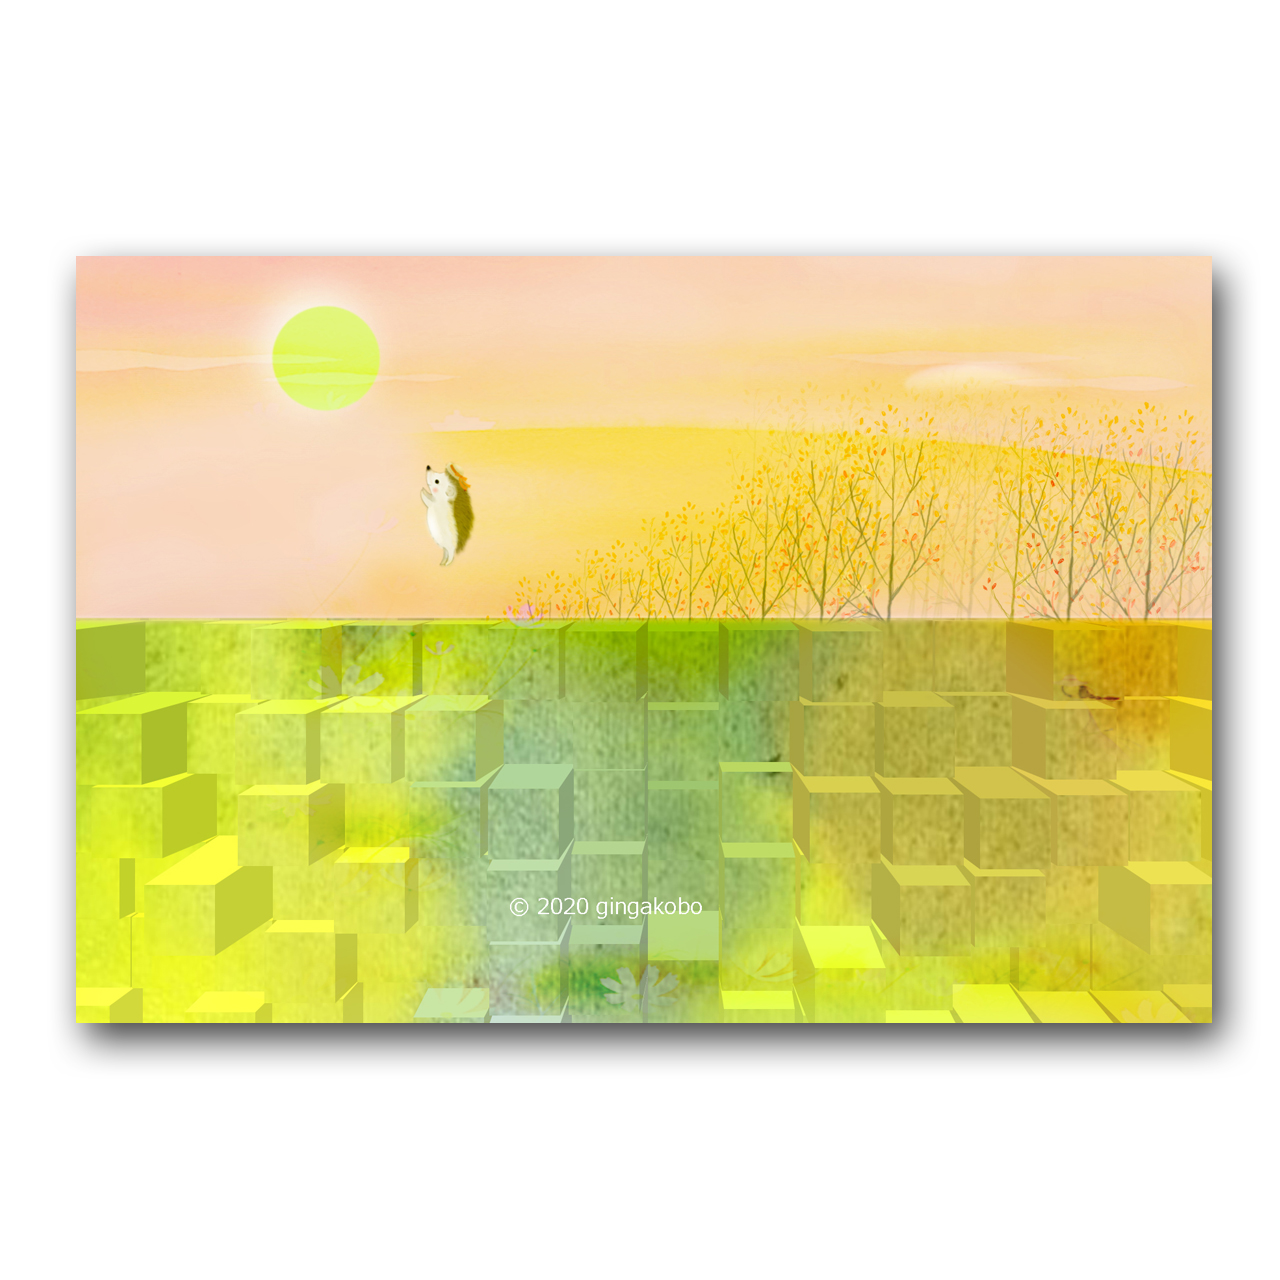 夕日の隙間に故郷があるはず ハリネズミ ほっこり癒しのイラストポストカード2枚組 No 1211 Iichi ハンドメイド クラフト作品 手仕事品の通販